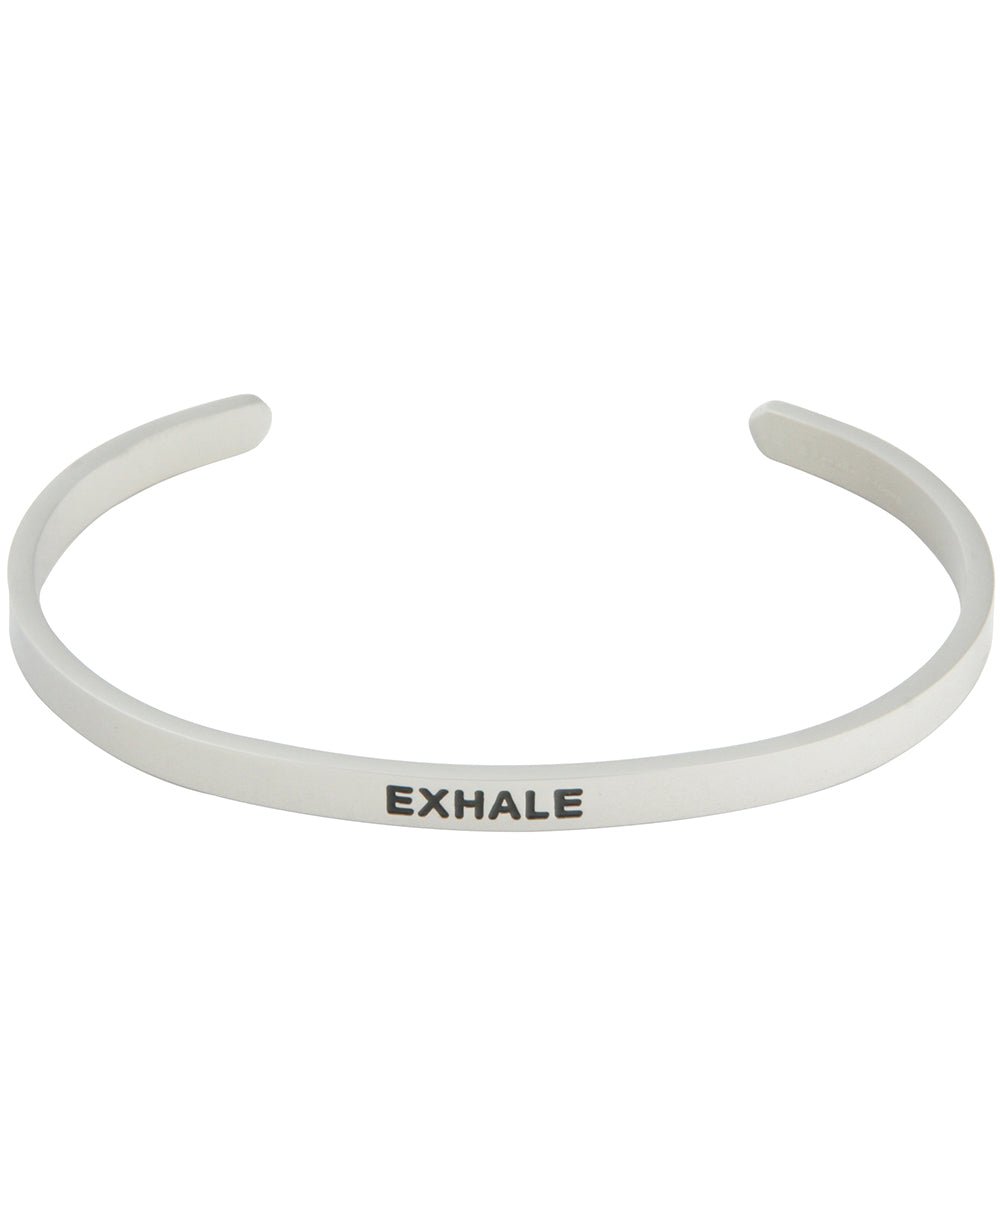 Meditational Cuff Bracelet, Exhale - Bracelets